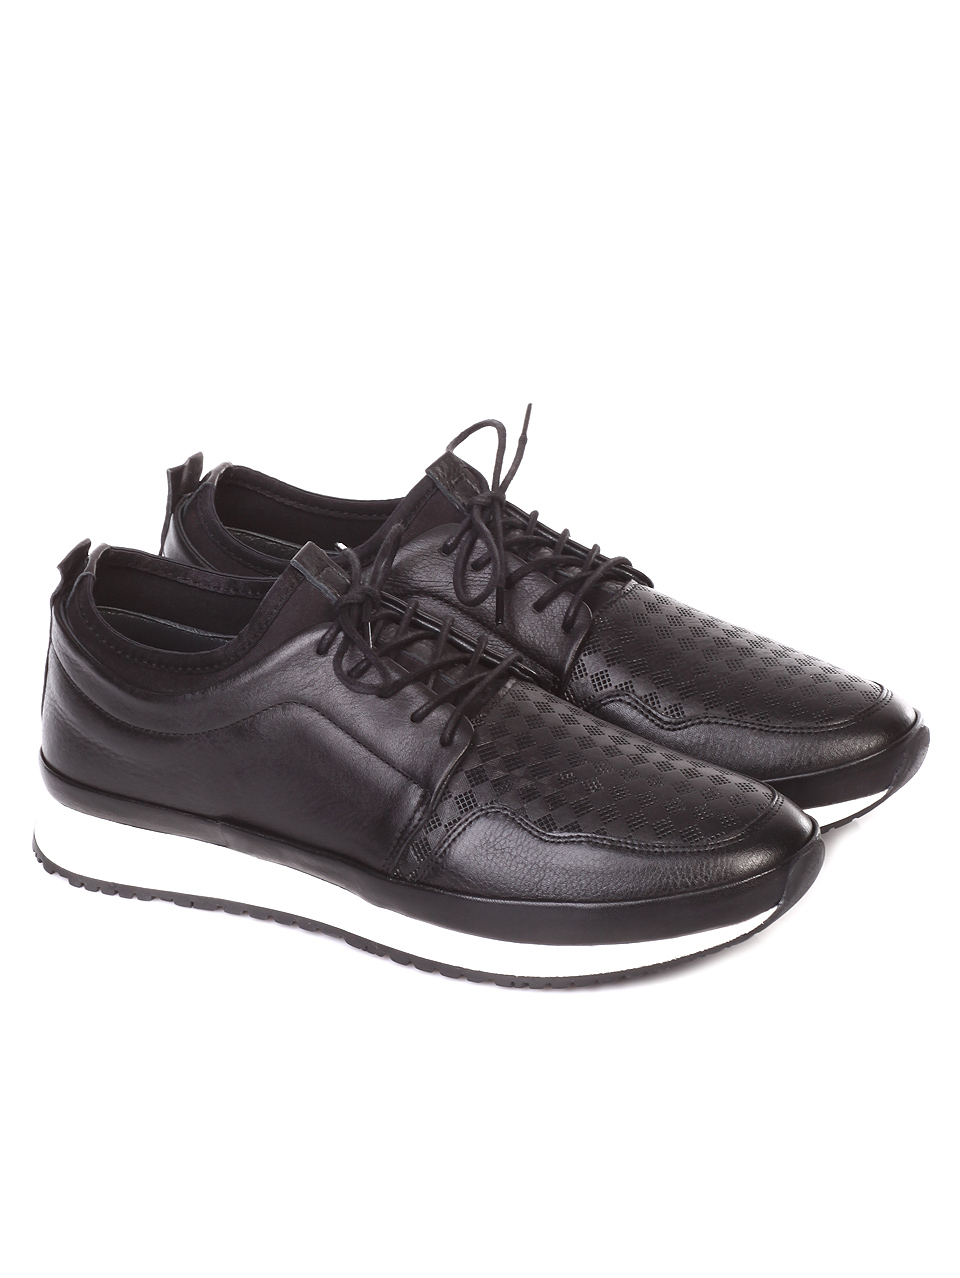 Ежедневни мъжки обувки от естествена кожа 7AT-19443 black